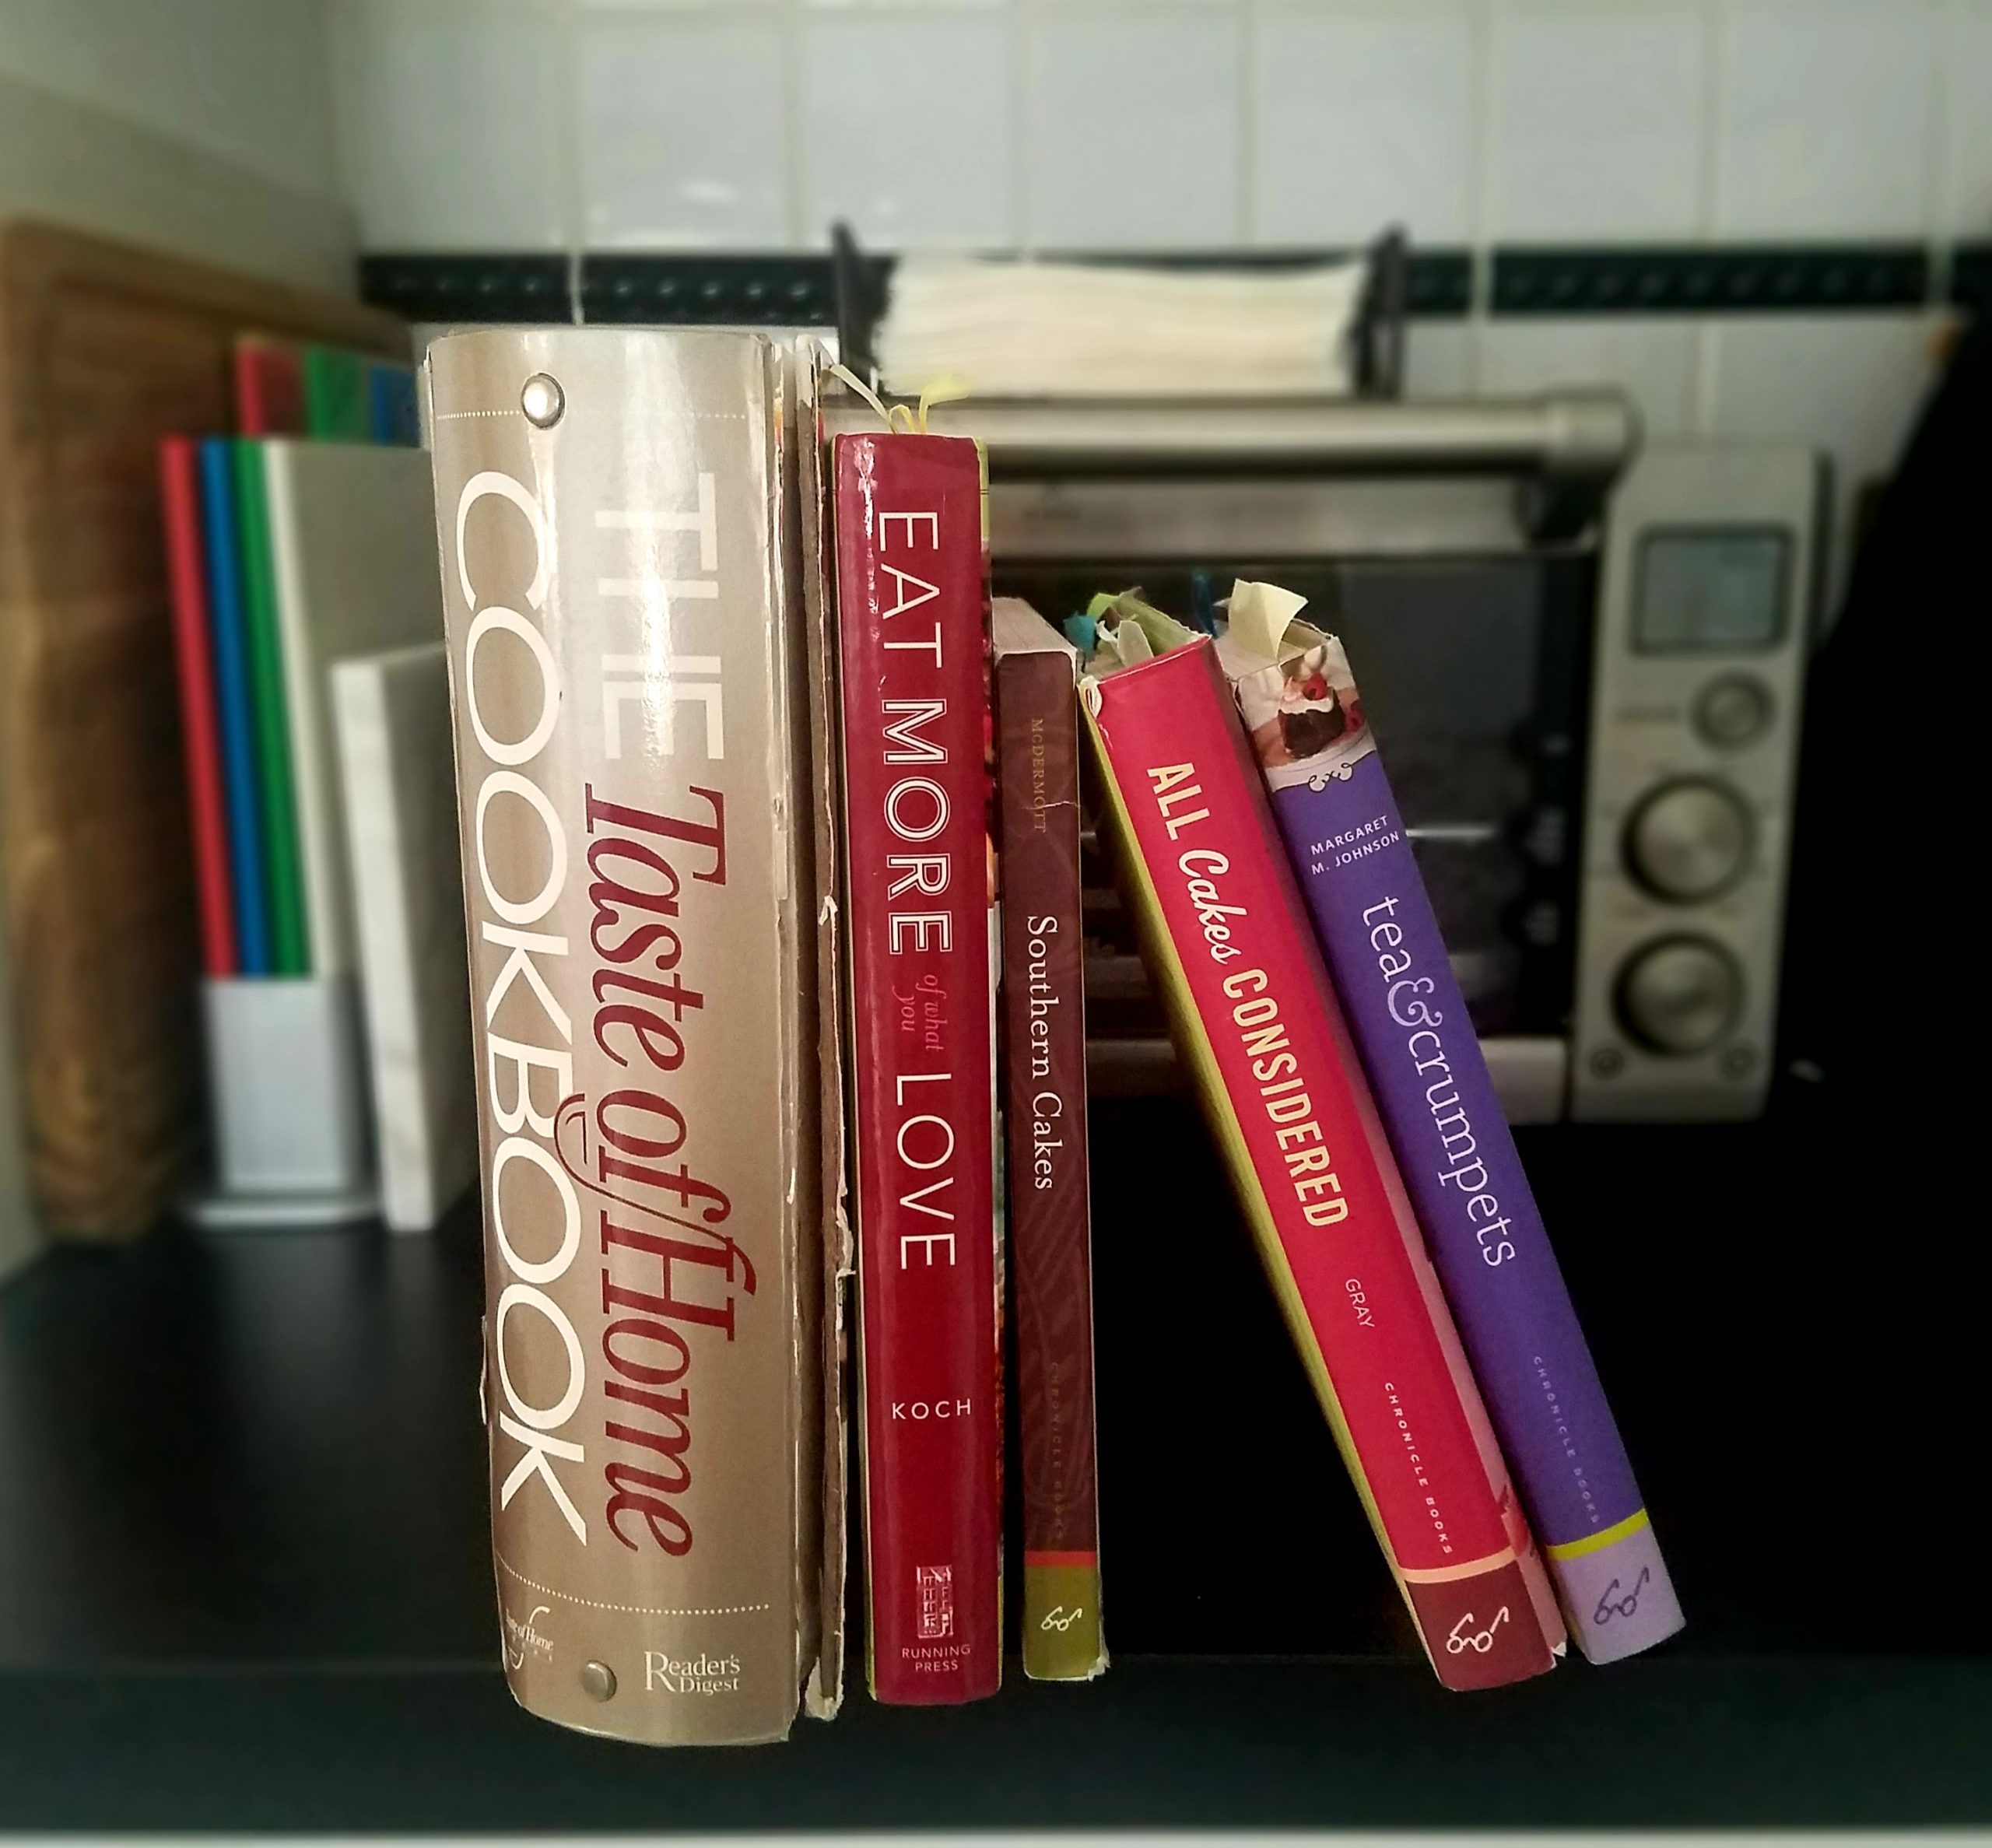 photo of cookbooks